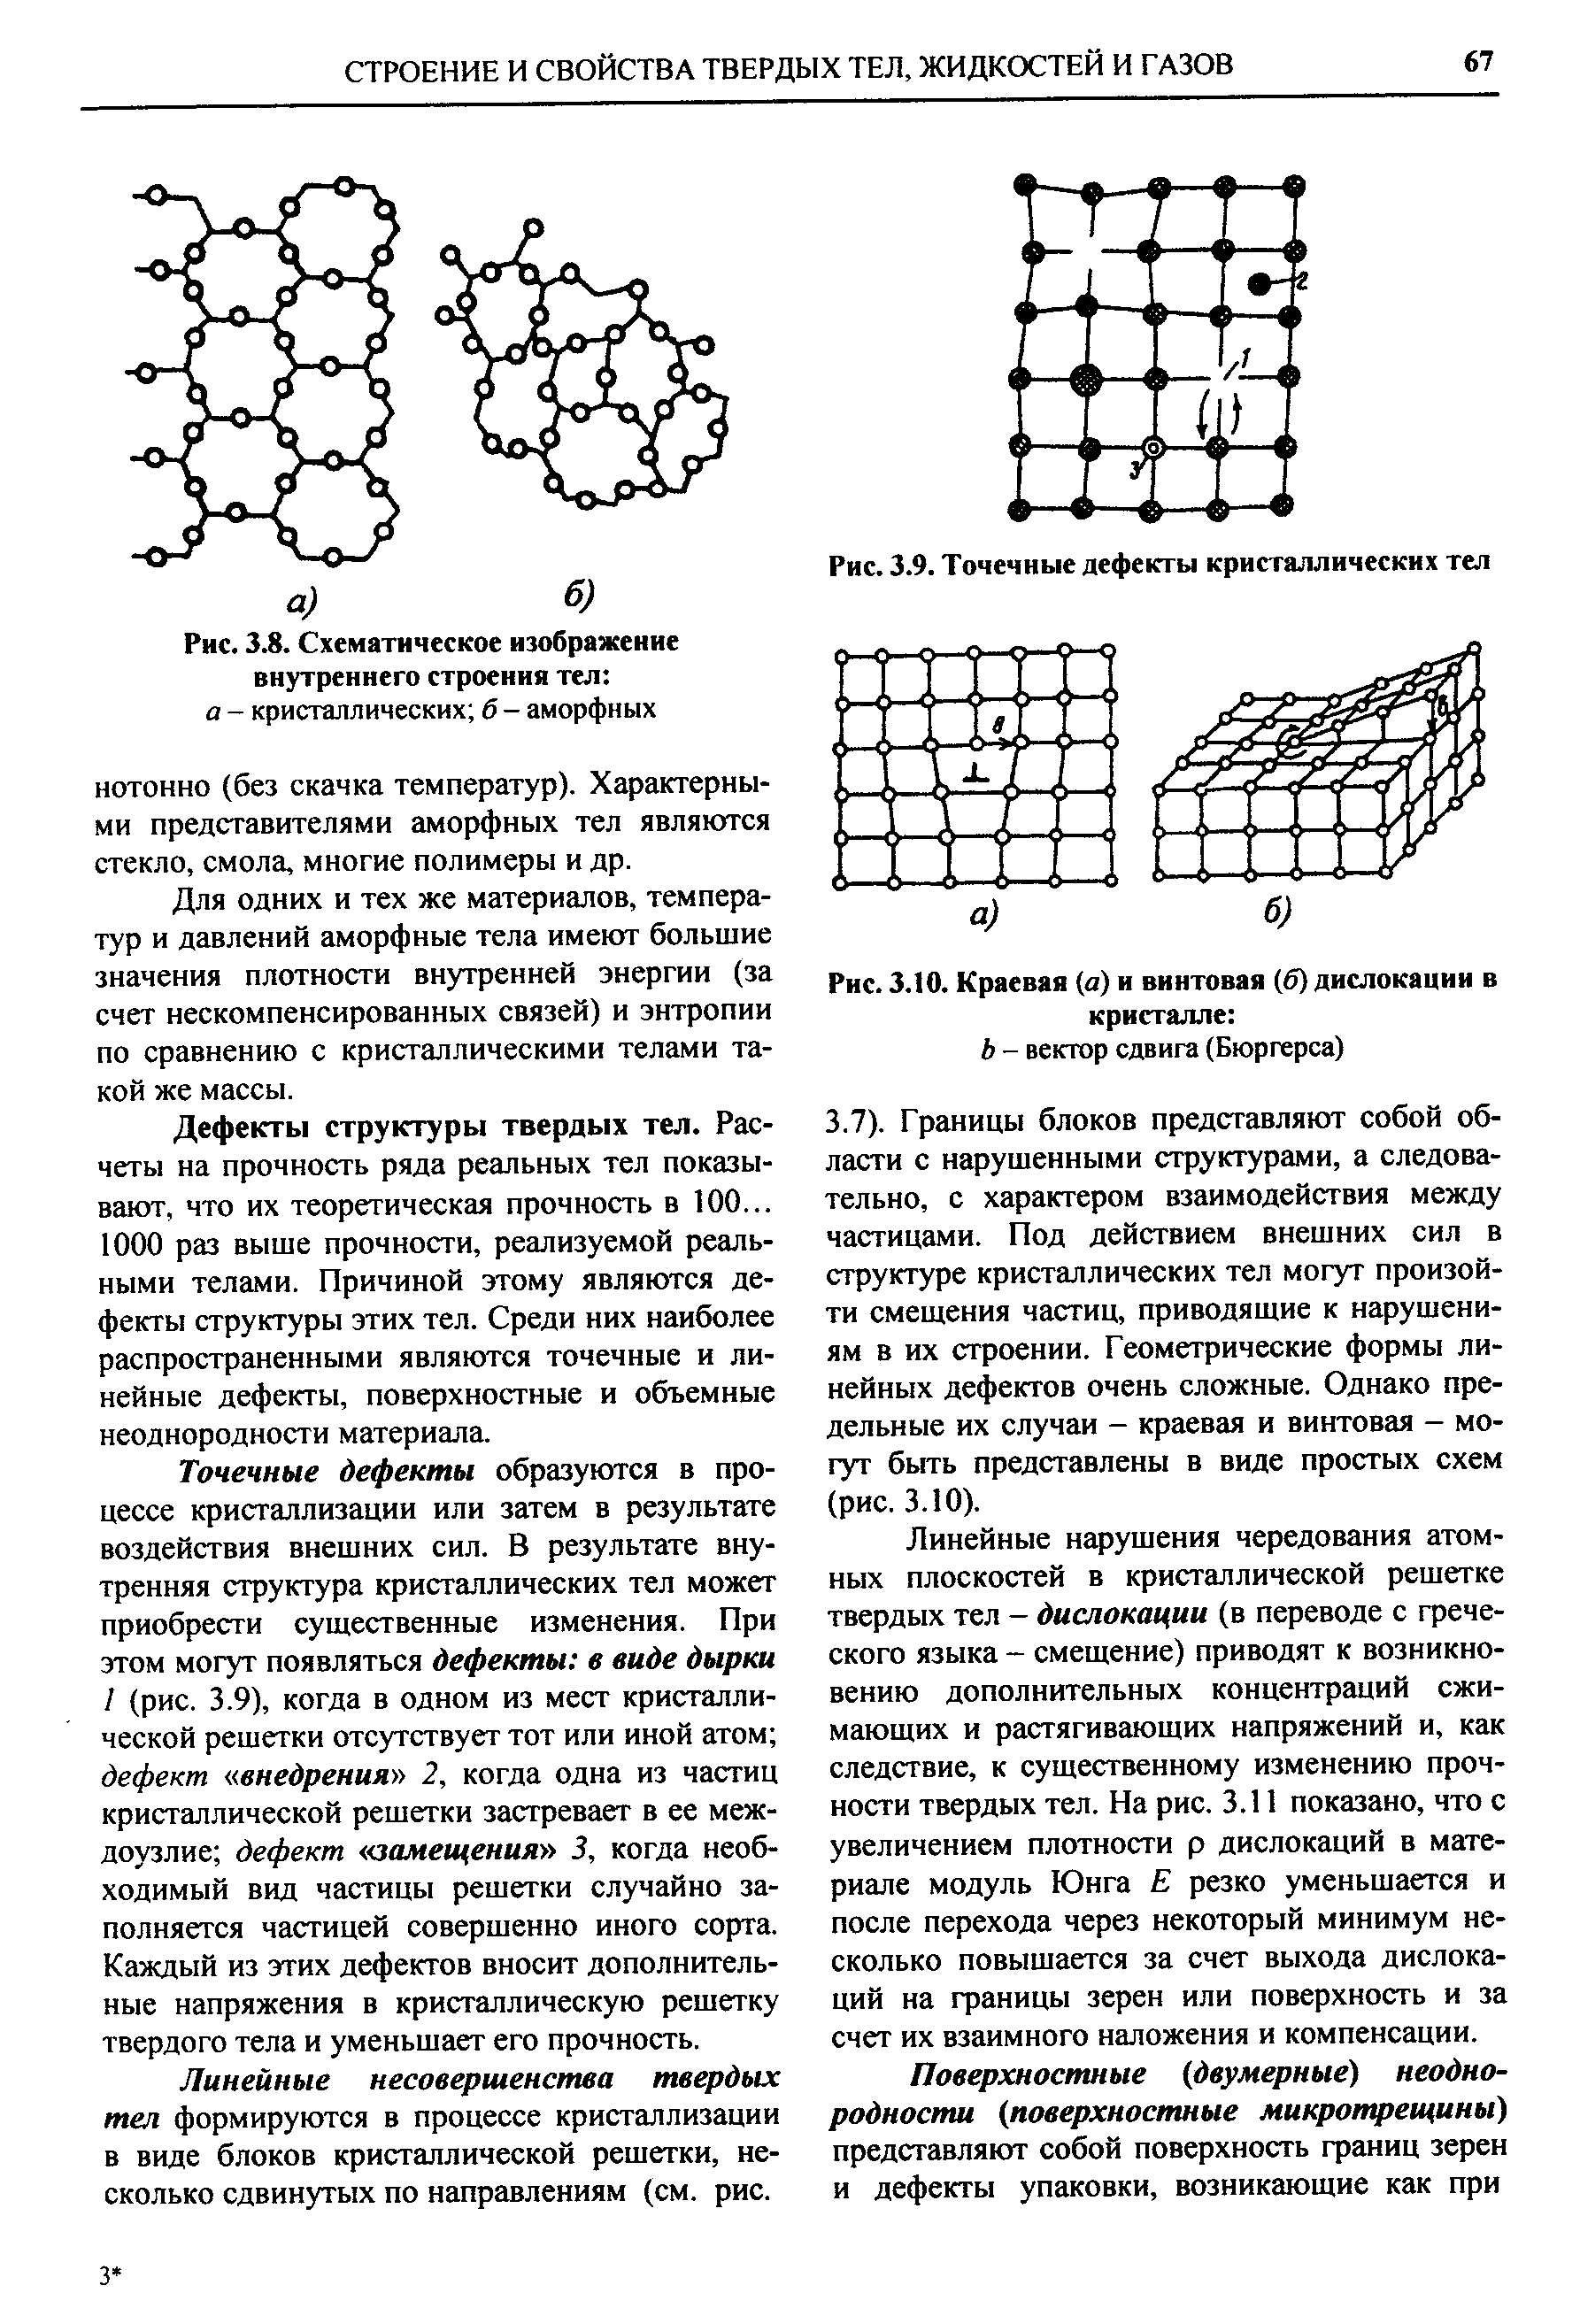 Рис. 3.10. Краевая а) и винтовая (б) дислокации в кристалле 
